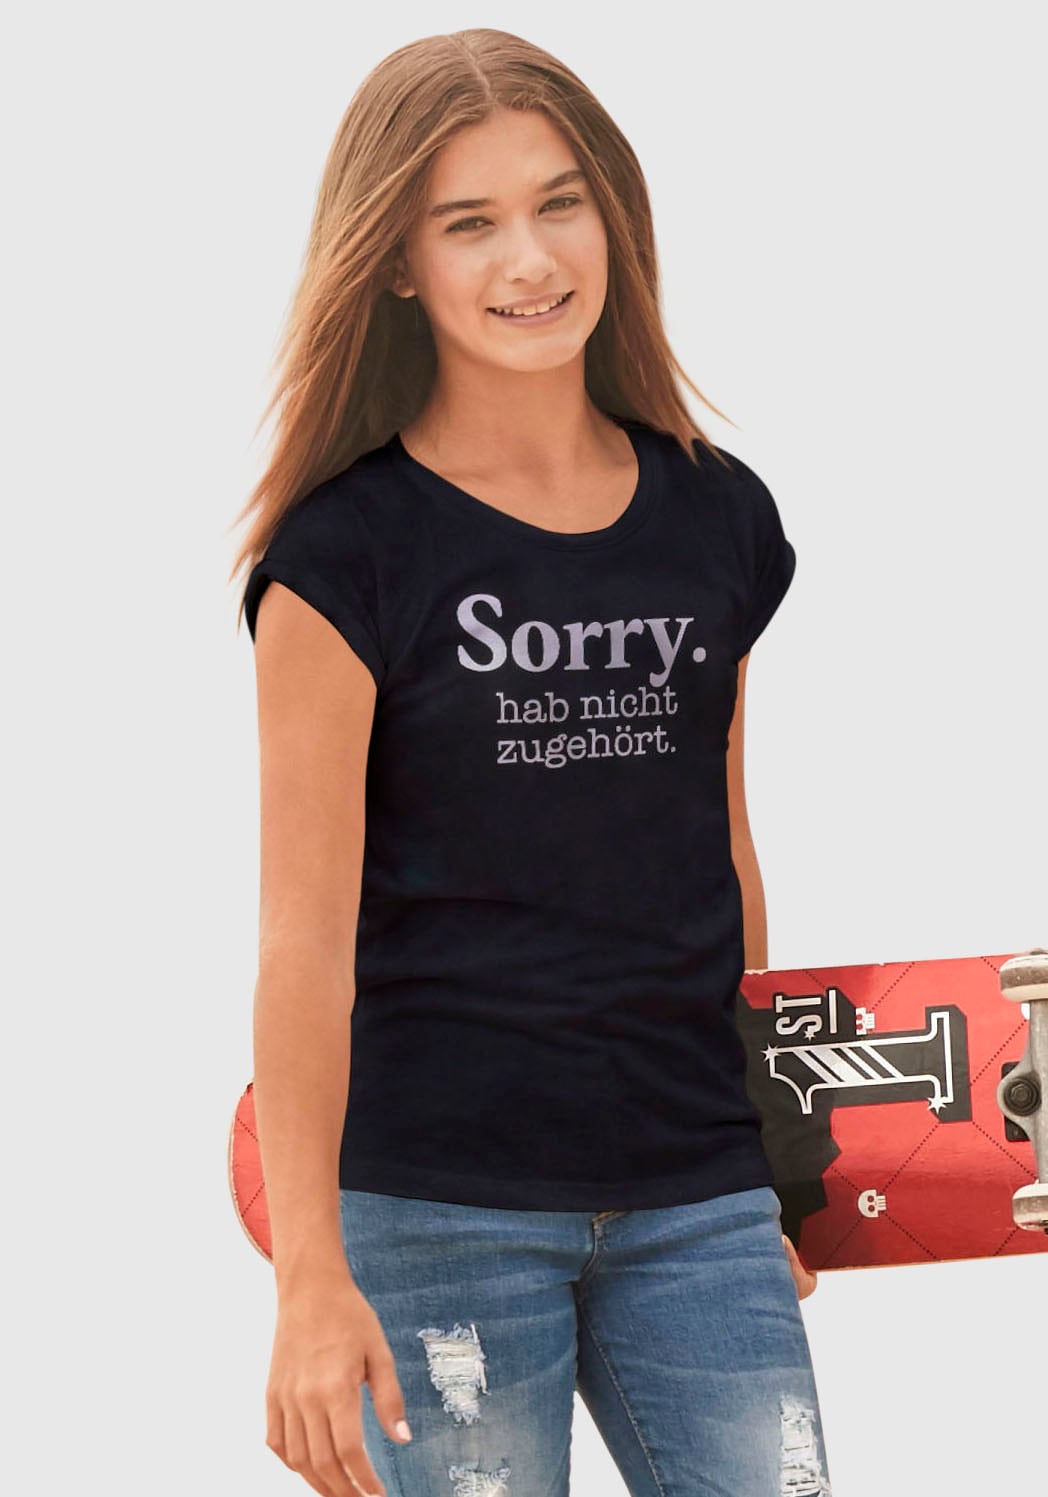 nicht ✵ »Sorry. weiter | Form günstig entdecken zugehört.«, Jelmoli-Versand KIDSWORLD in T-Shirt hab legerer